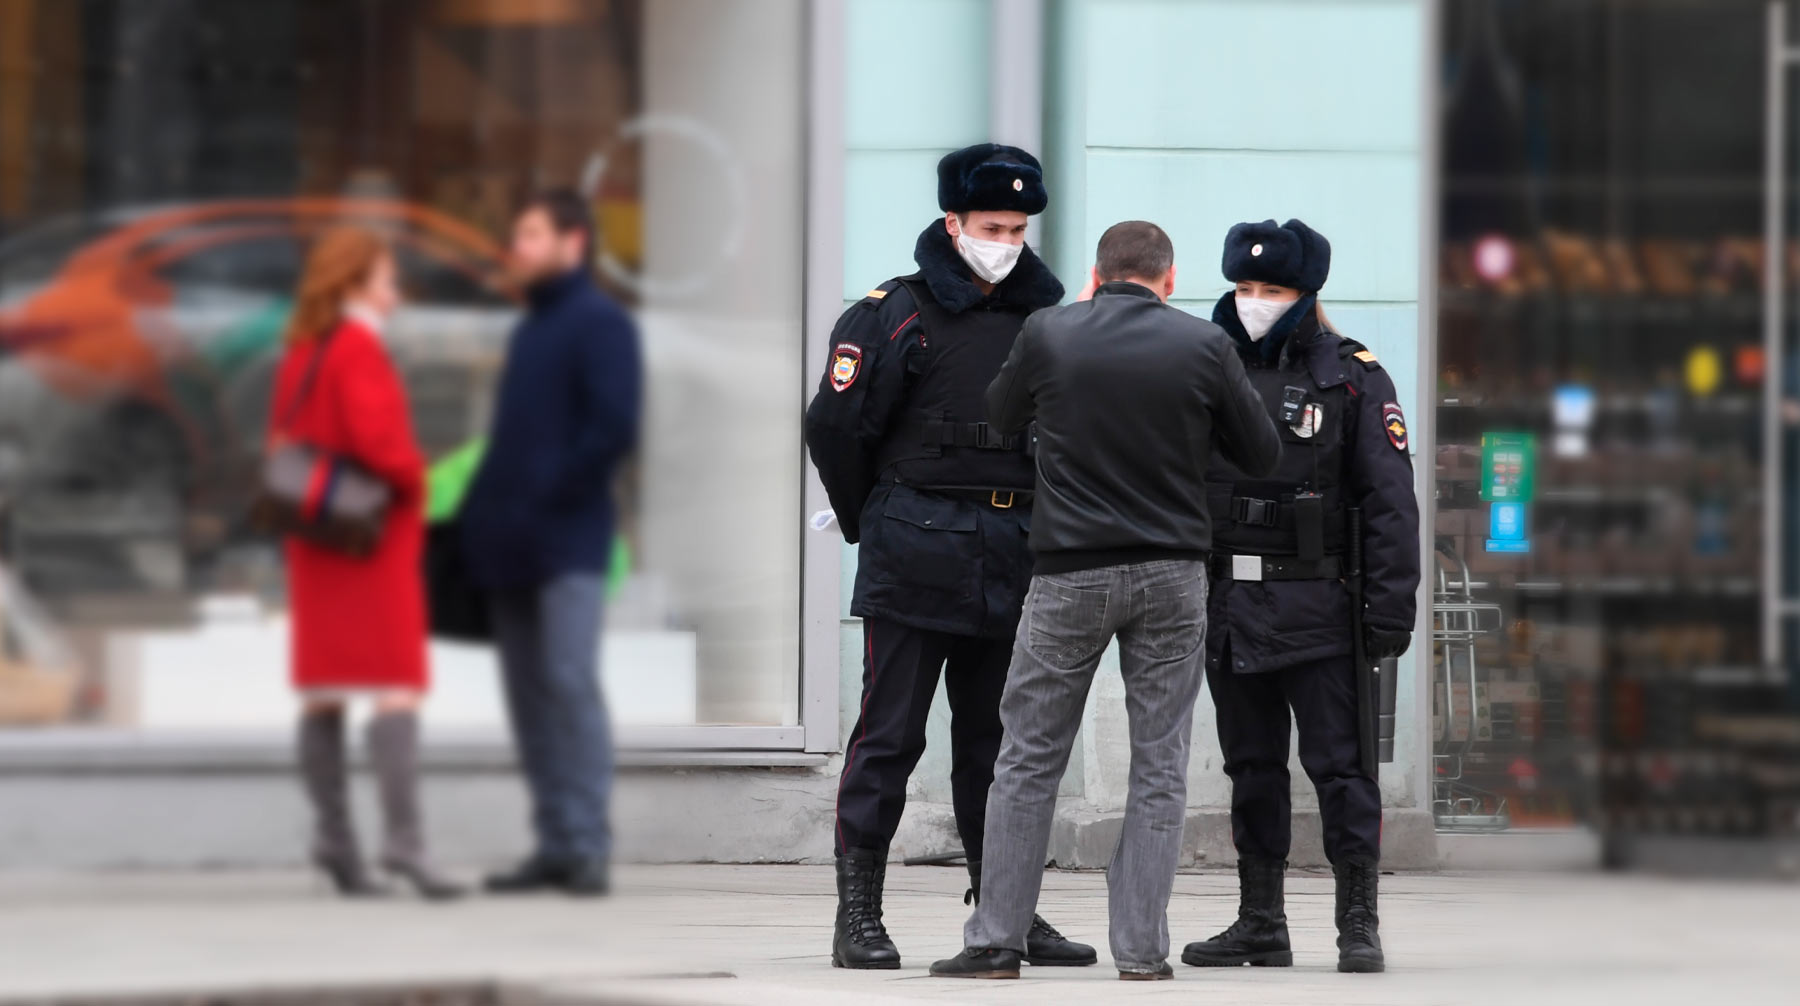 Министр столичного правительства Евгений Данчиков отметил, что за последние сутки был выявлен 21 случай несоблюдения карантина Фото: © Global Look Press / Komsomolskaya Pravda